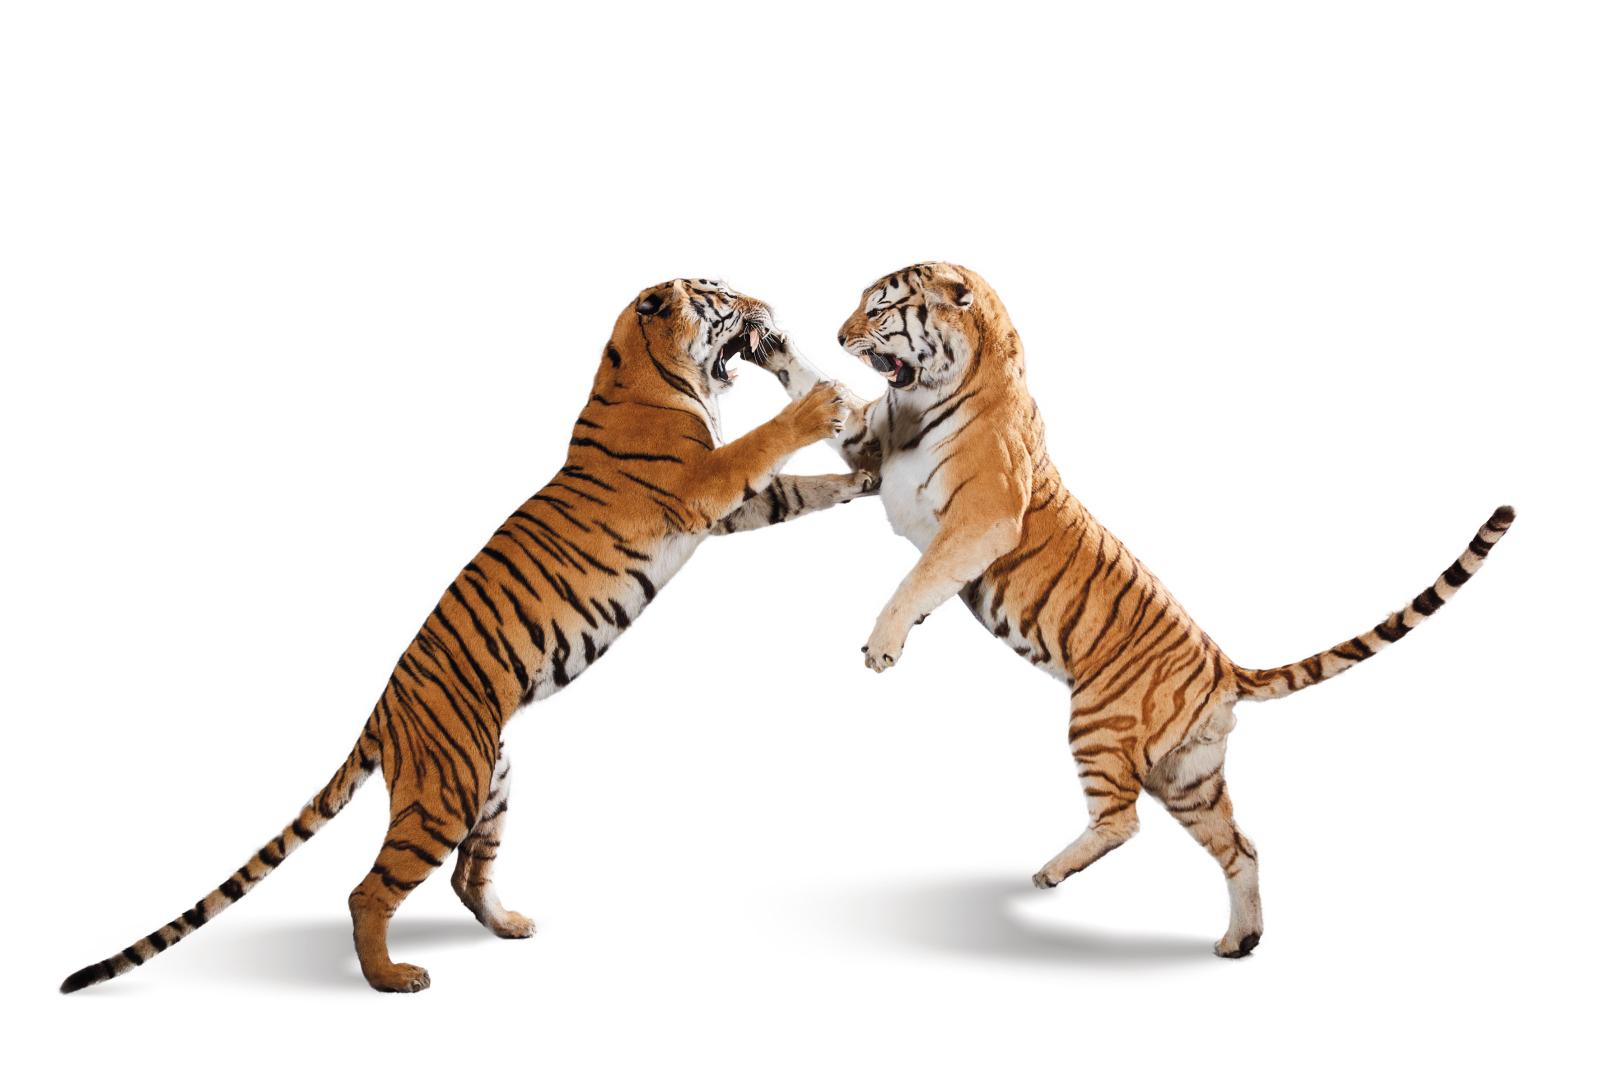 Duel sauvage entre deux tigres de Sibérie